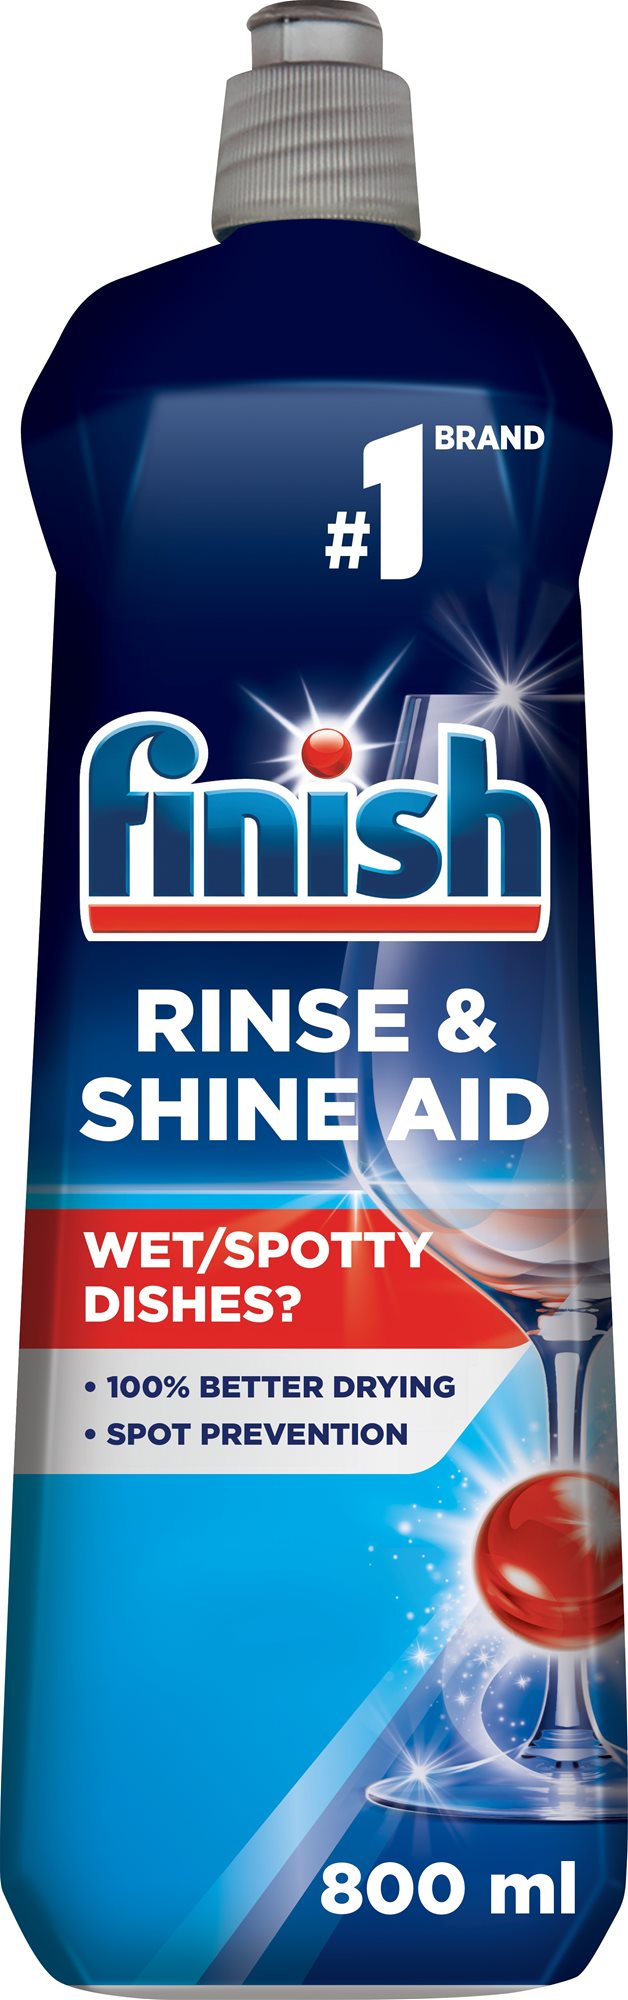 Mosogatógép öblitő FINISH Shine & Dry Regular öblítőszer 800 ml